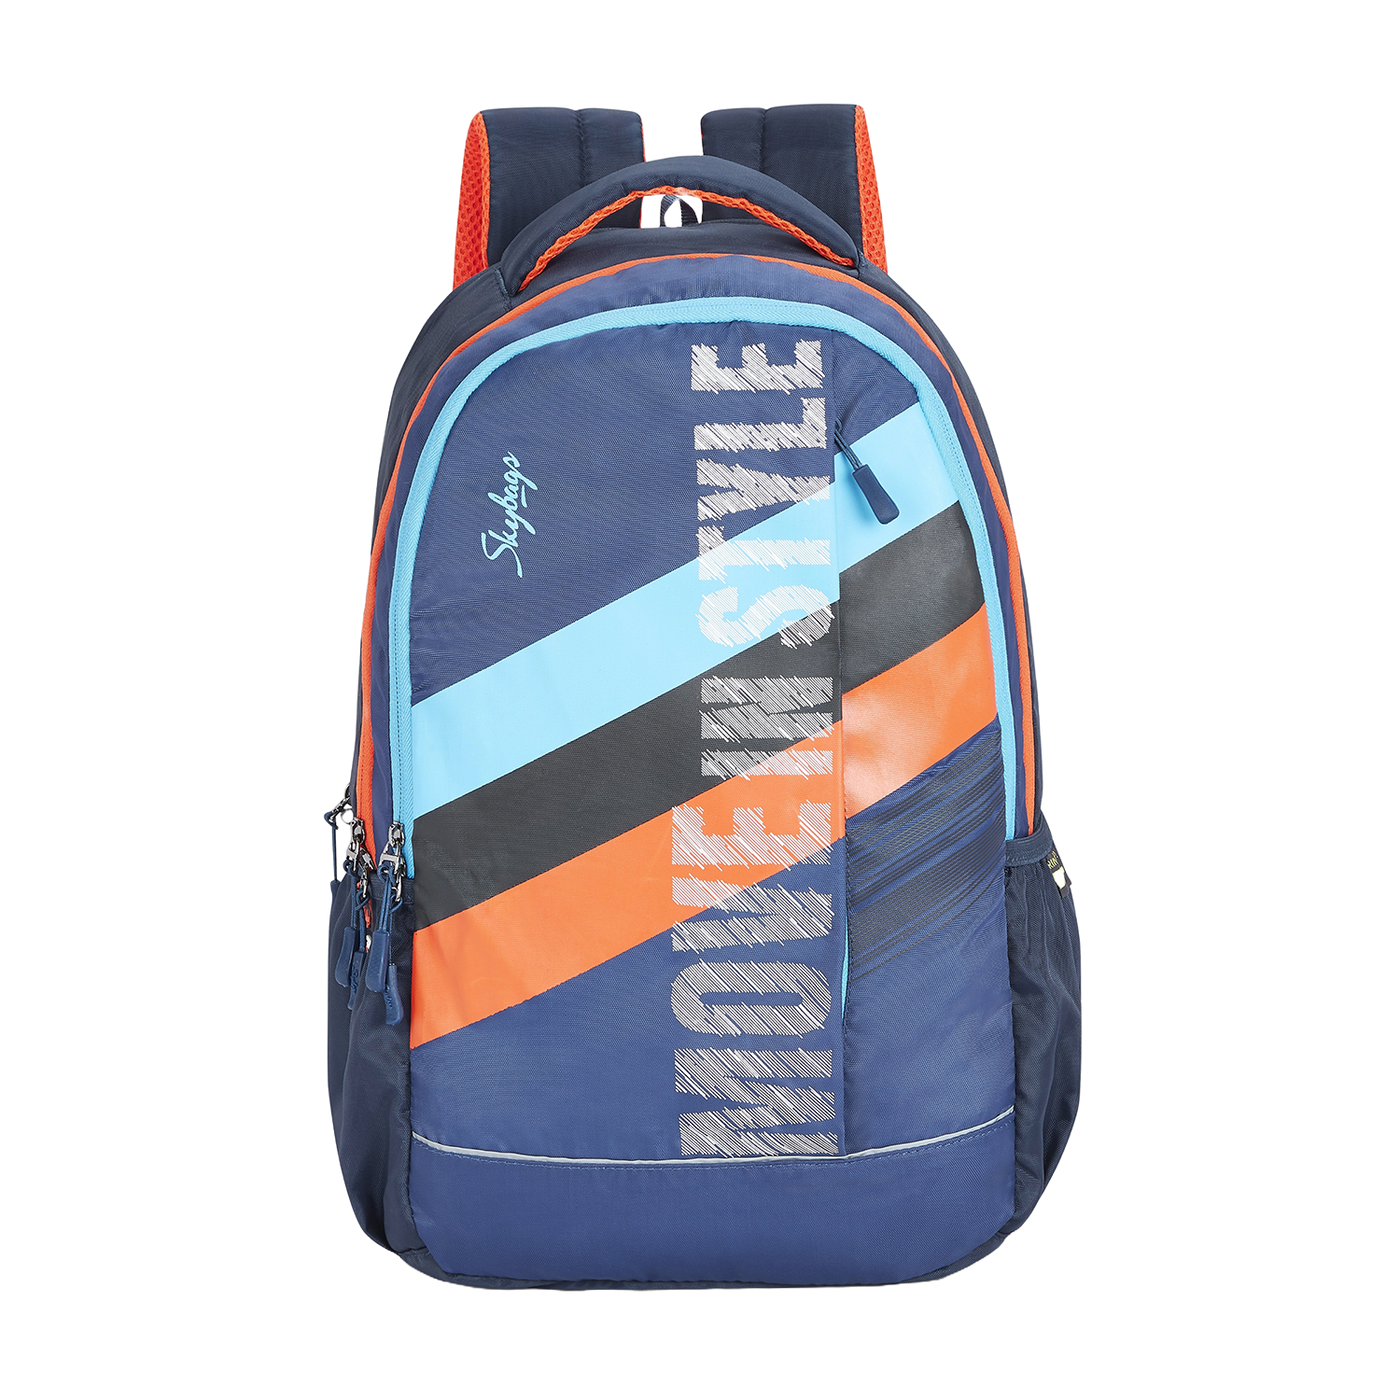 Strider pro laptop backpack h blue